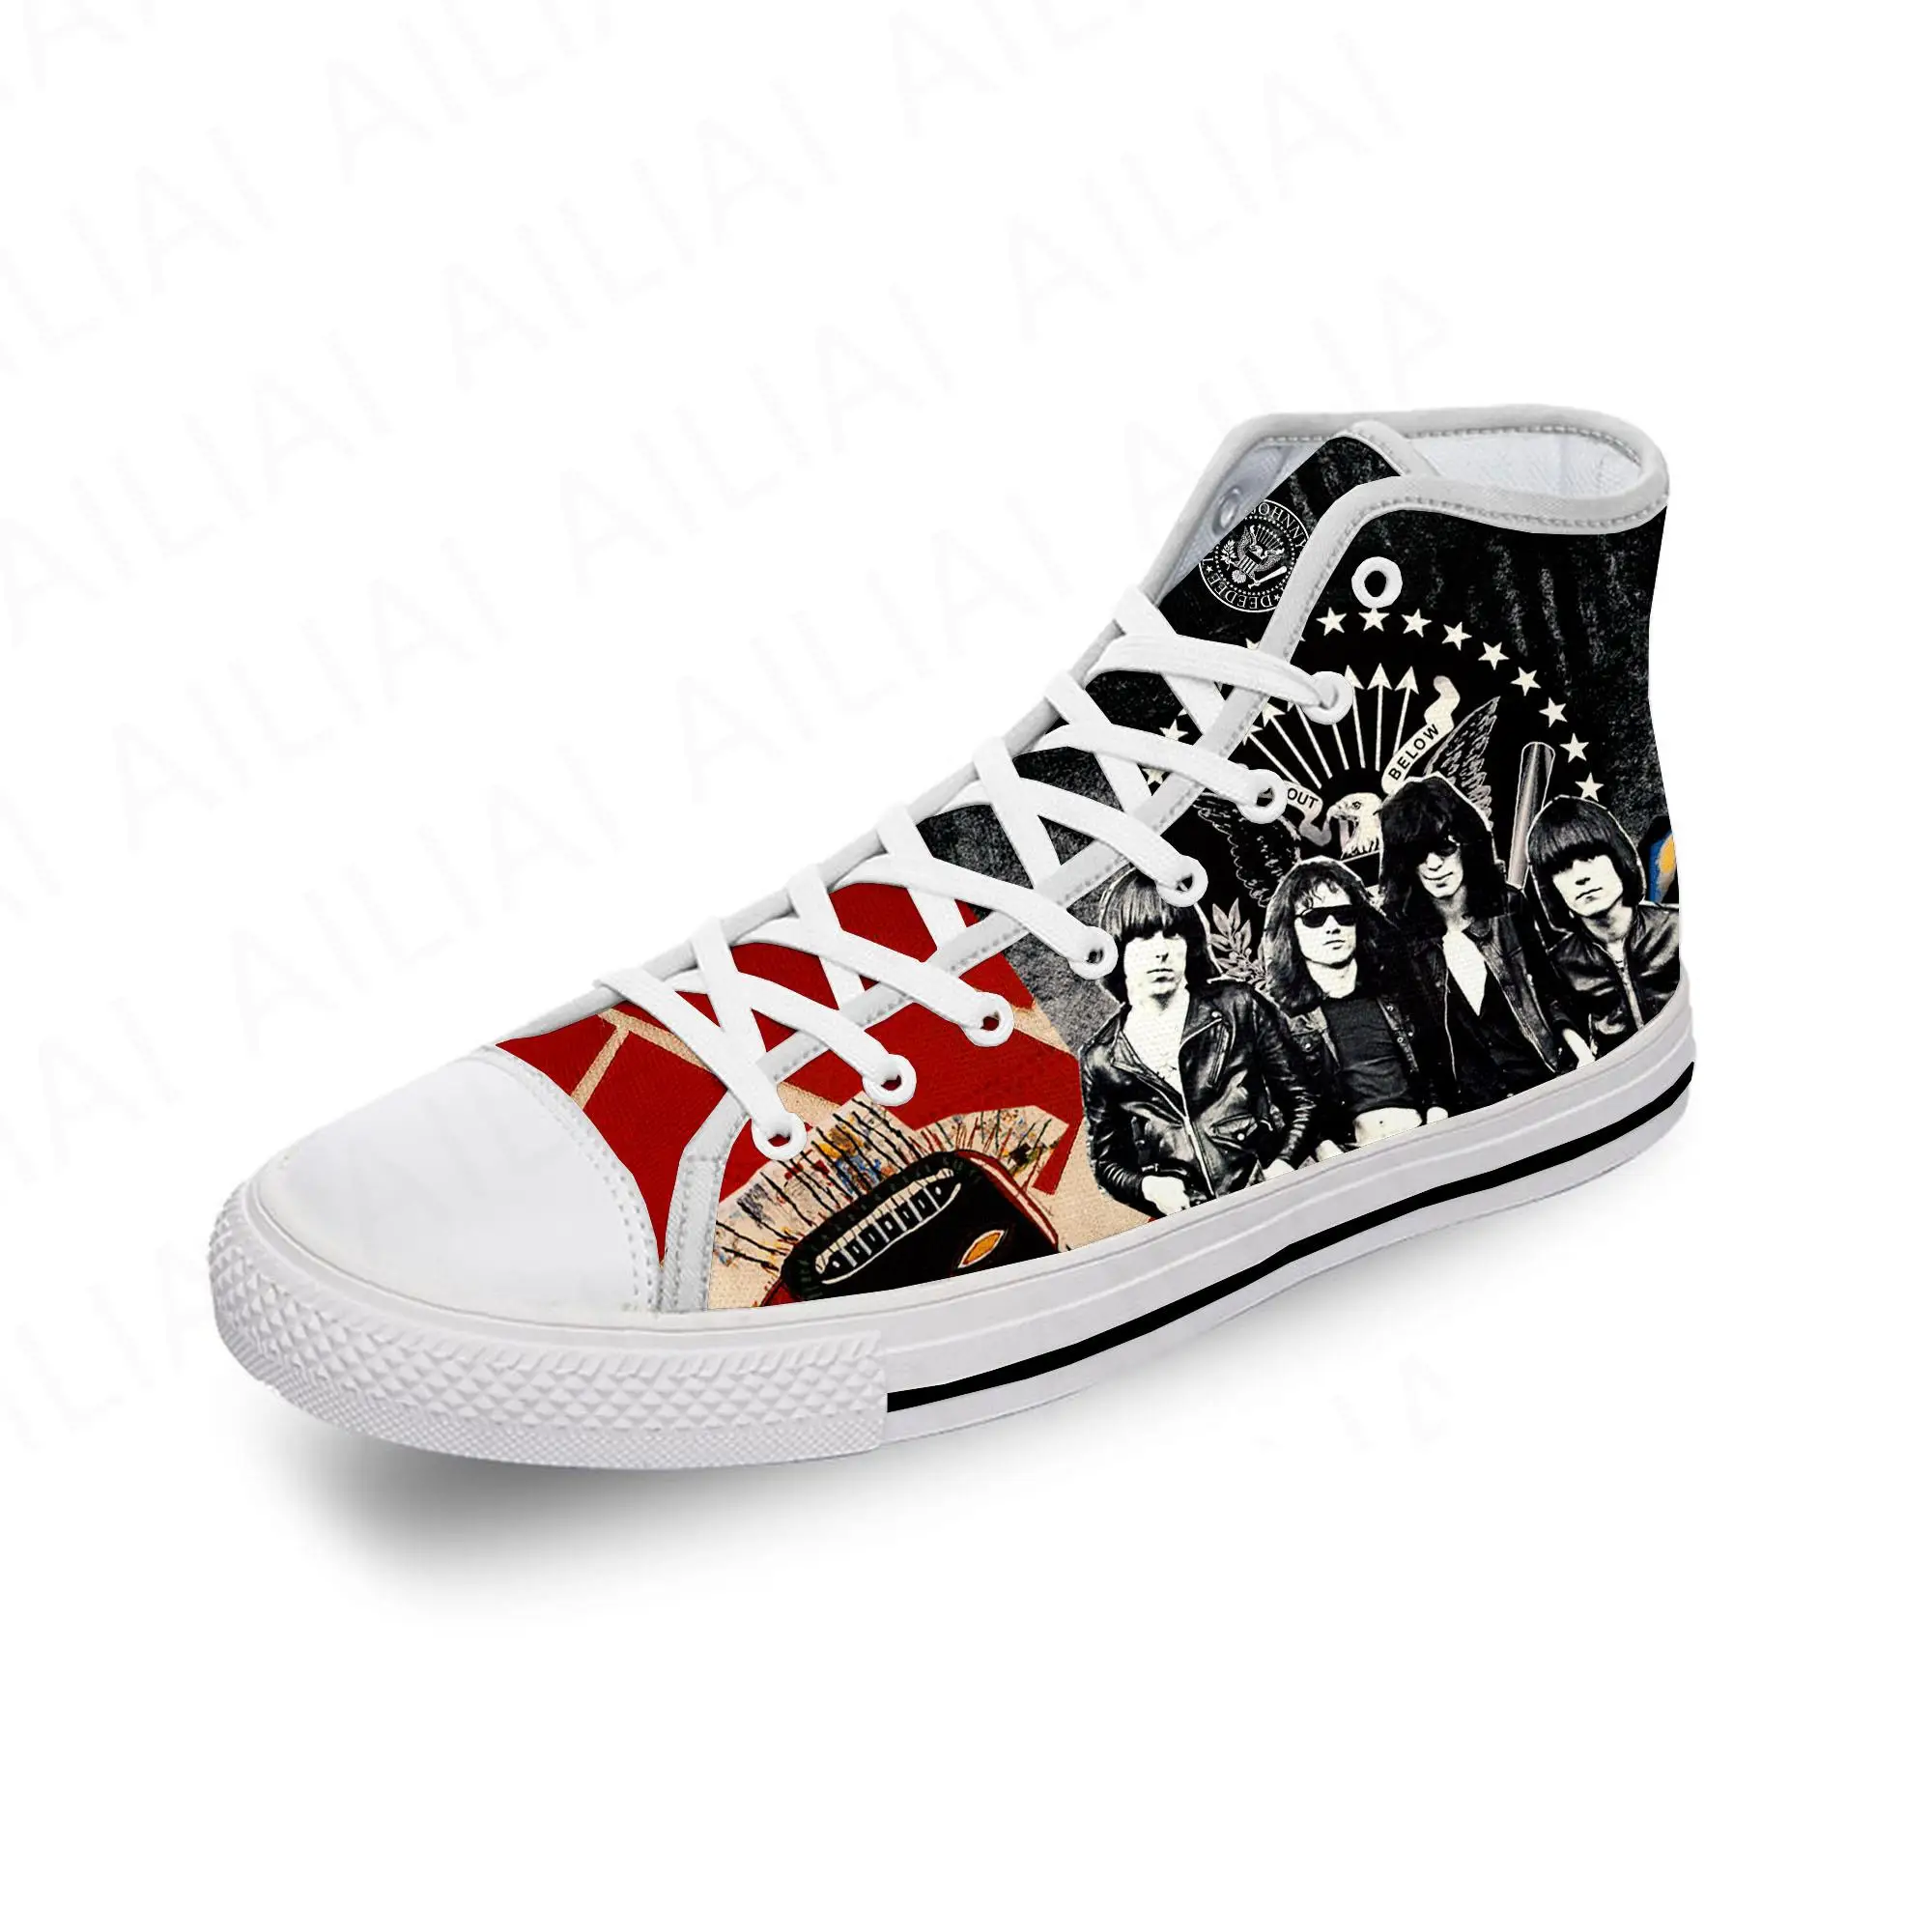 

Холщовые кроссовки Ramone Seal Eagle в стиле панк-рок, легкие дышащие кеды с 3D принтом, модная обувь для мужчин и женщин, белые тканевые